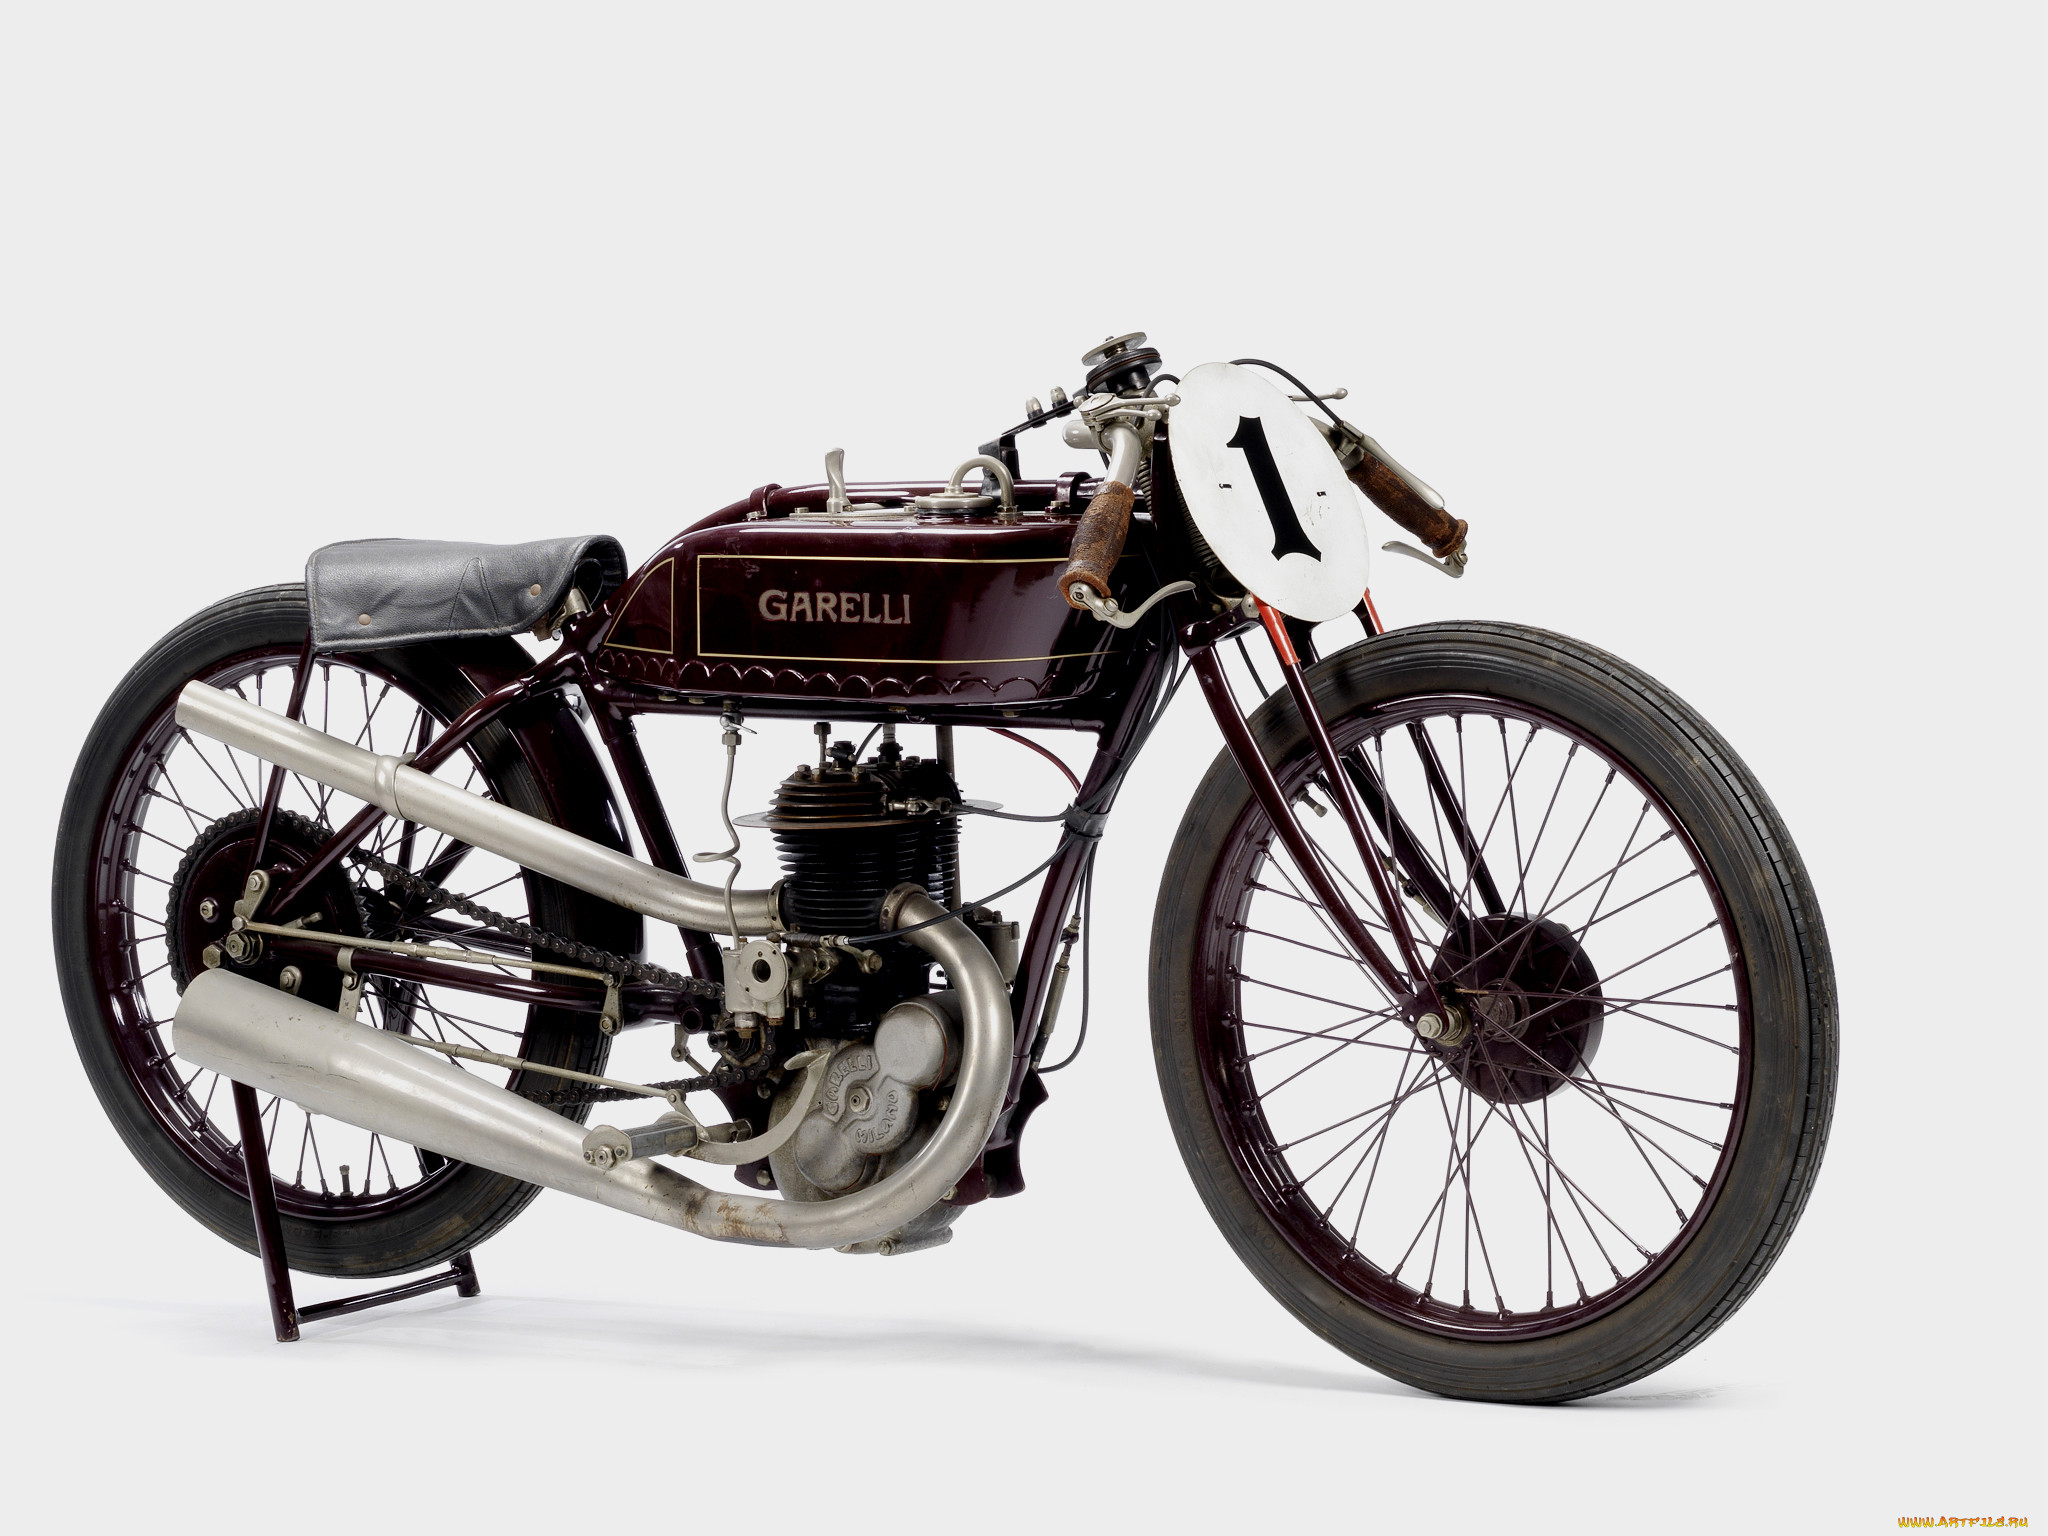 1926 garelli 348cc racing motorcycle, , -unsort, racing